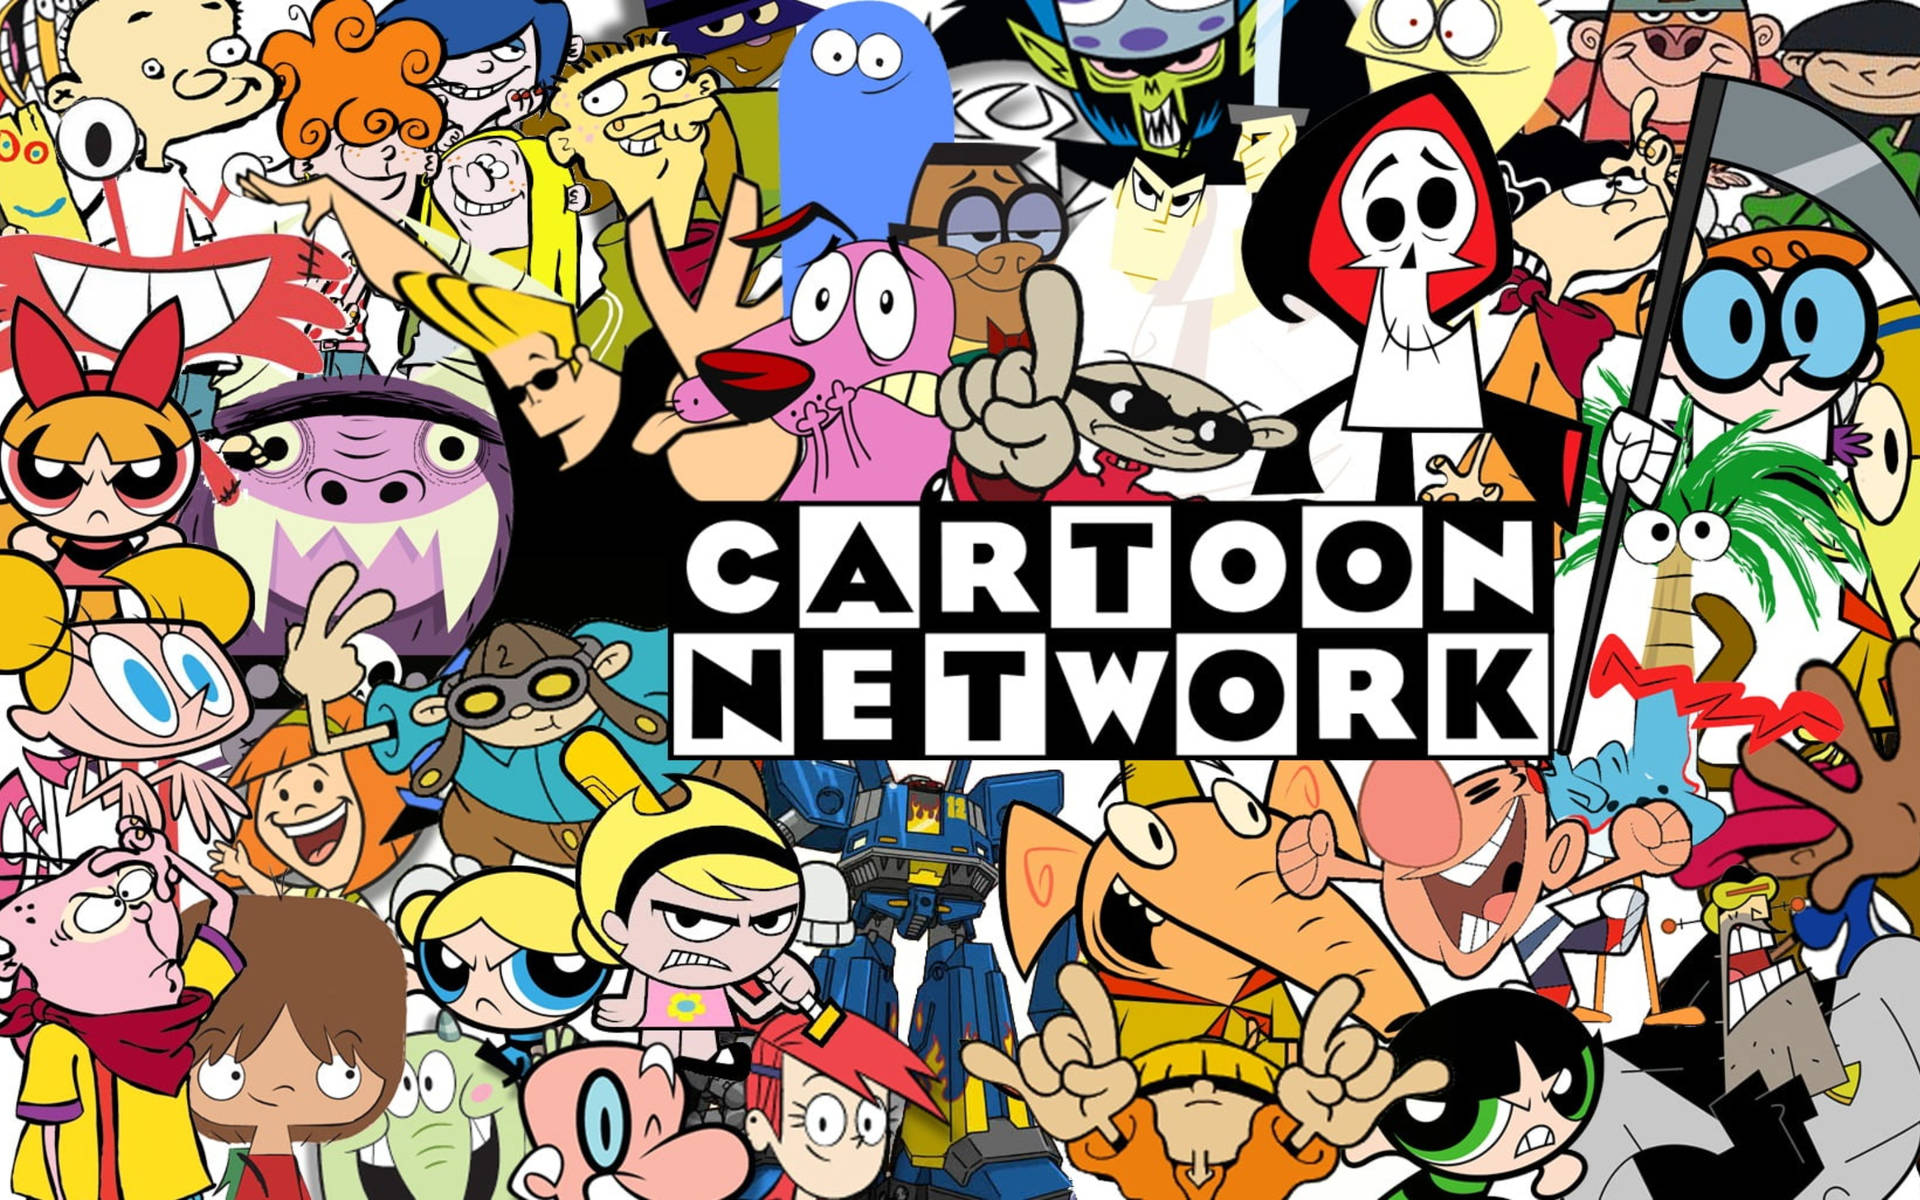 Cartoon network commercials